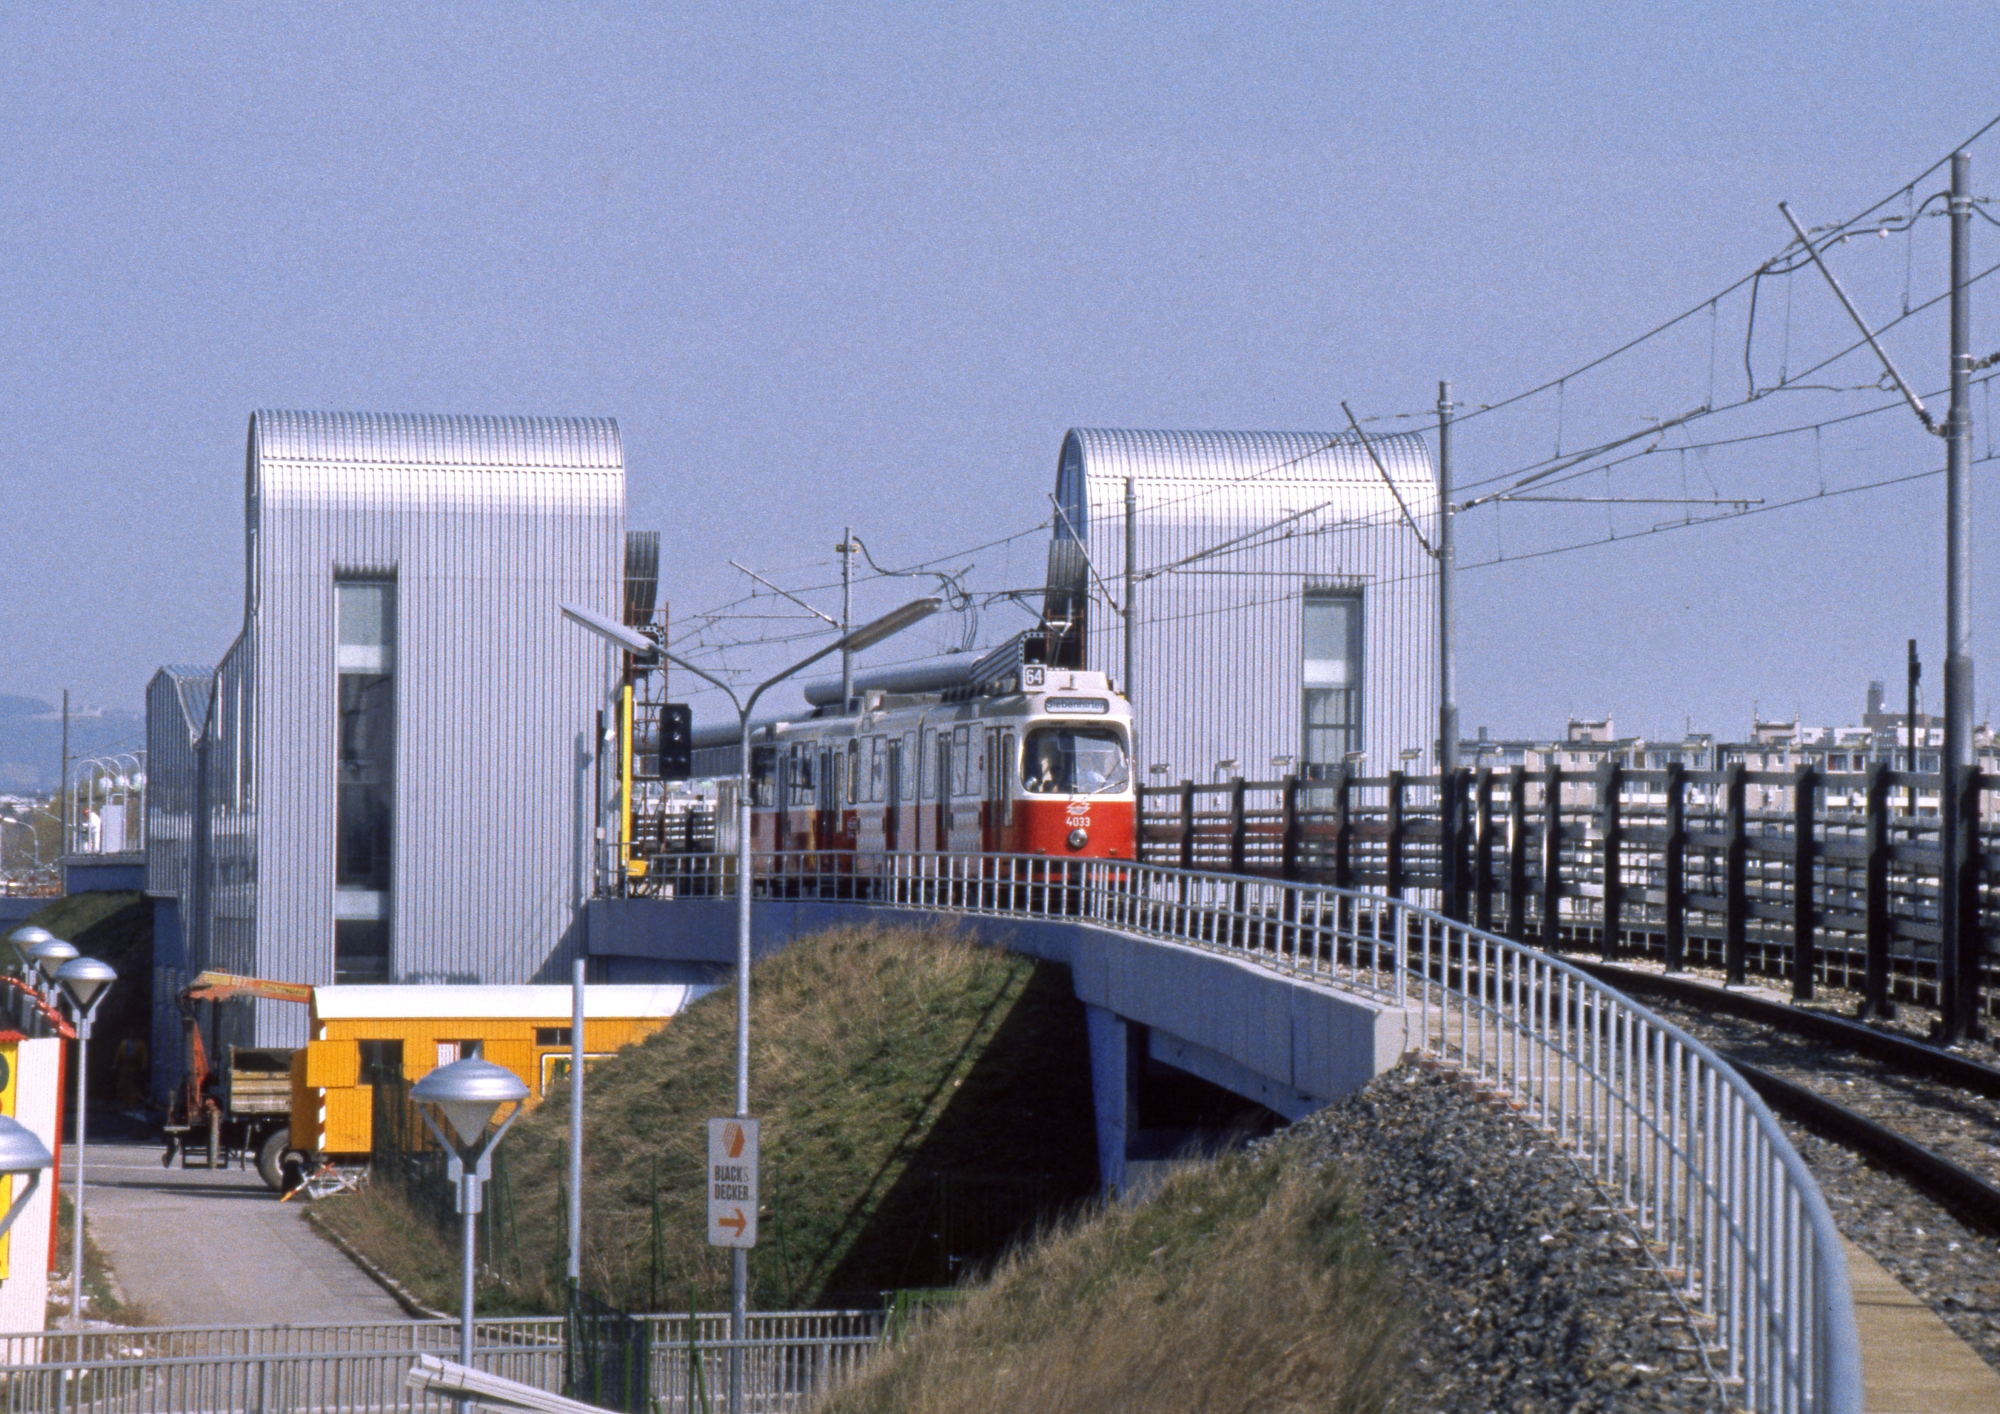  Zug der Linie 64 in Fahrtrichtung Siebenhirten  während Umbau zur U6, Perfektastraße, April 1995